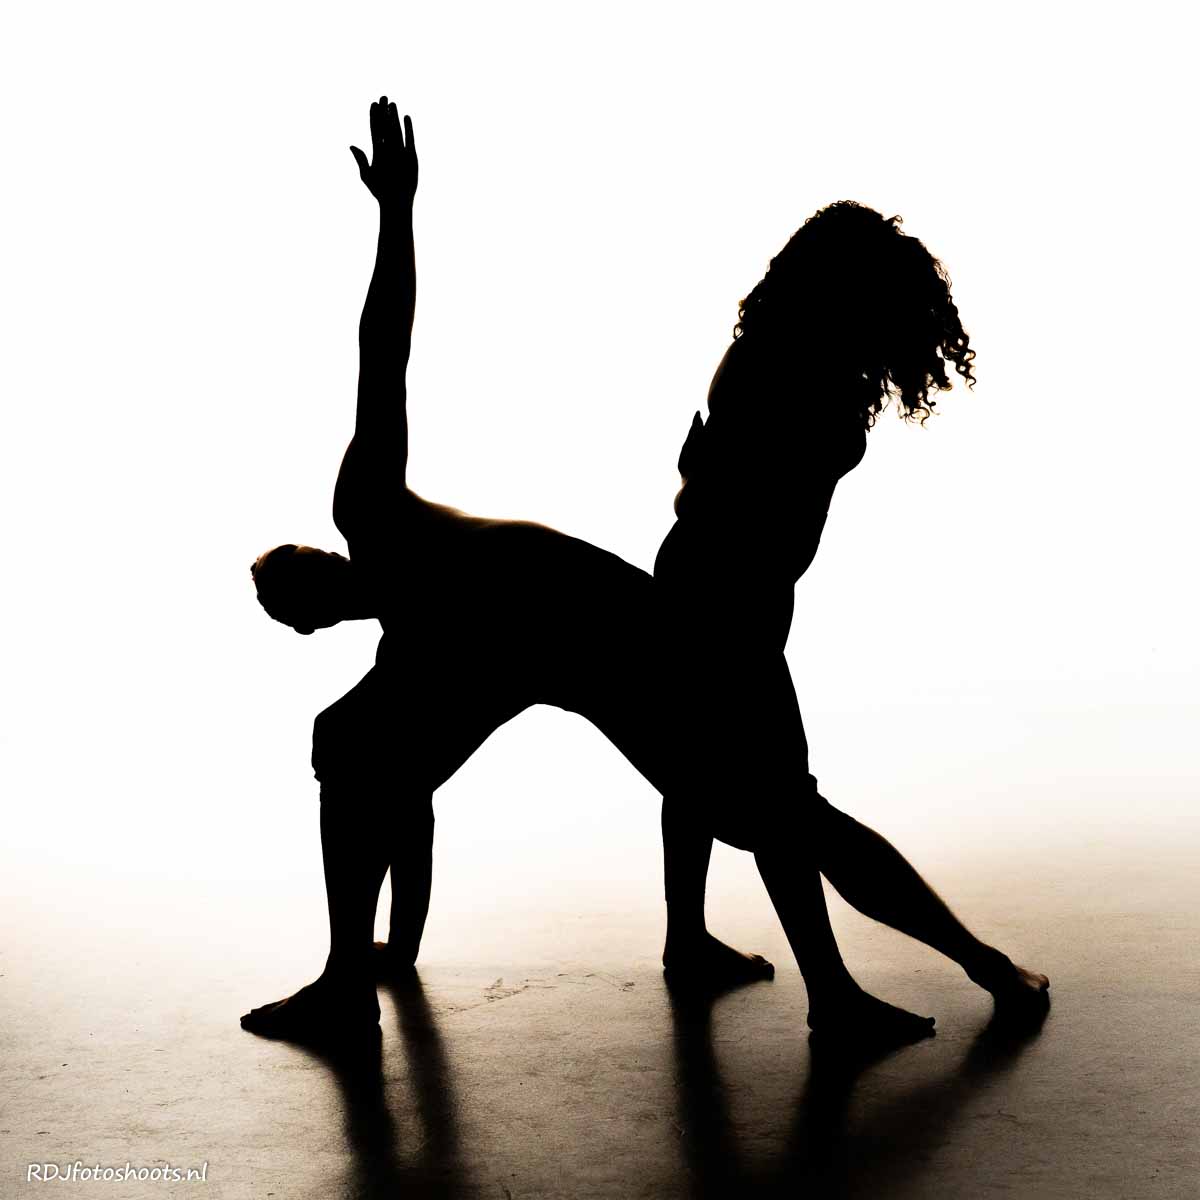 tfp spiritueel: Jasper & Priscilla, silhouette yoga